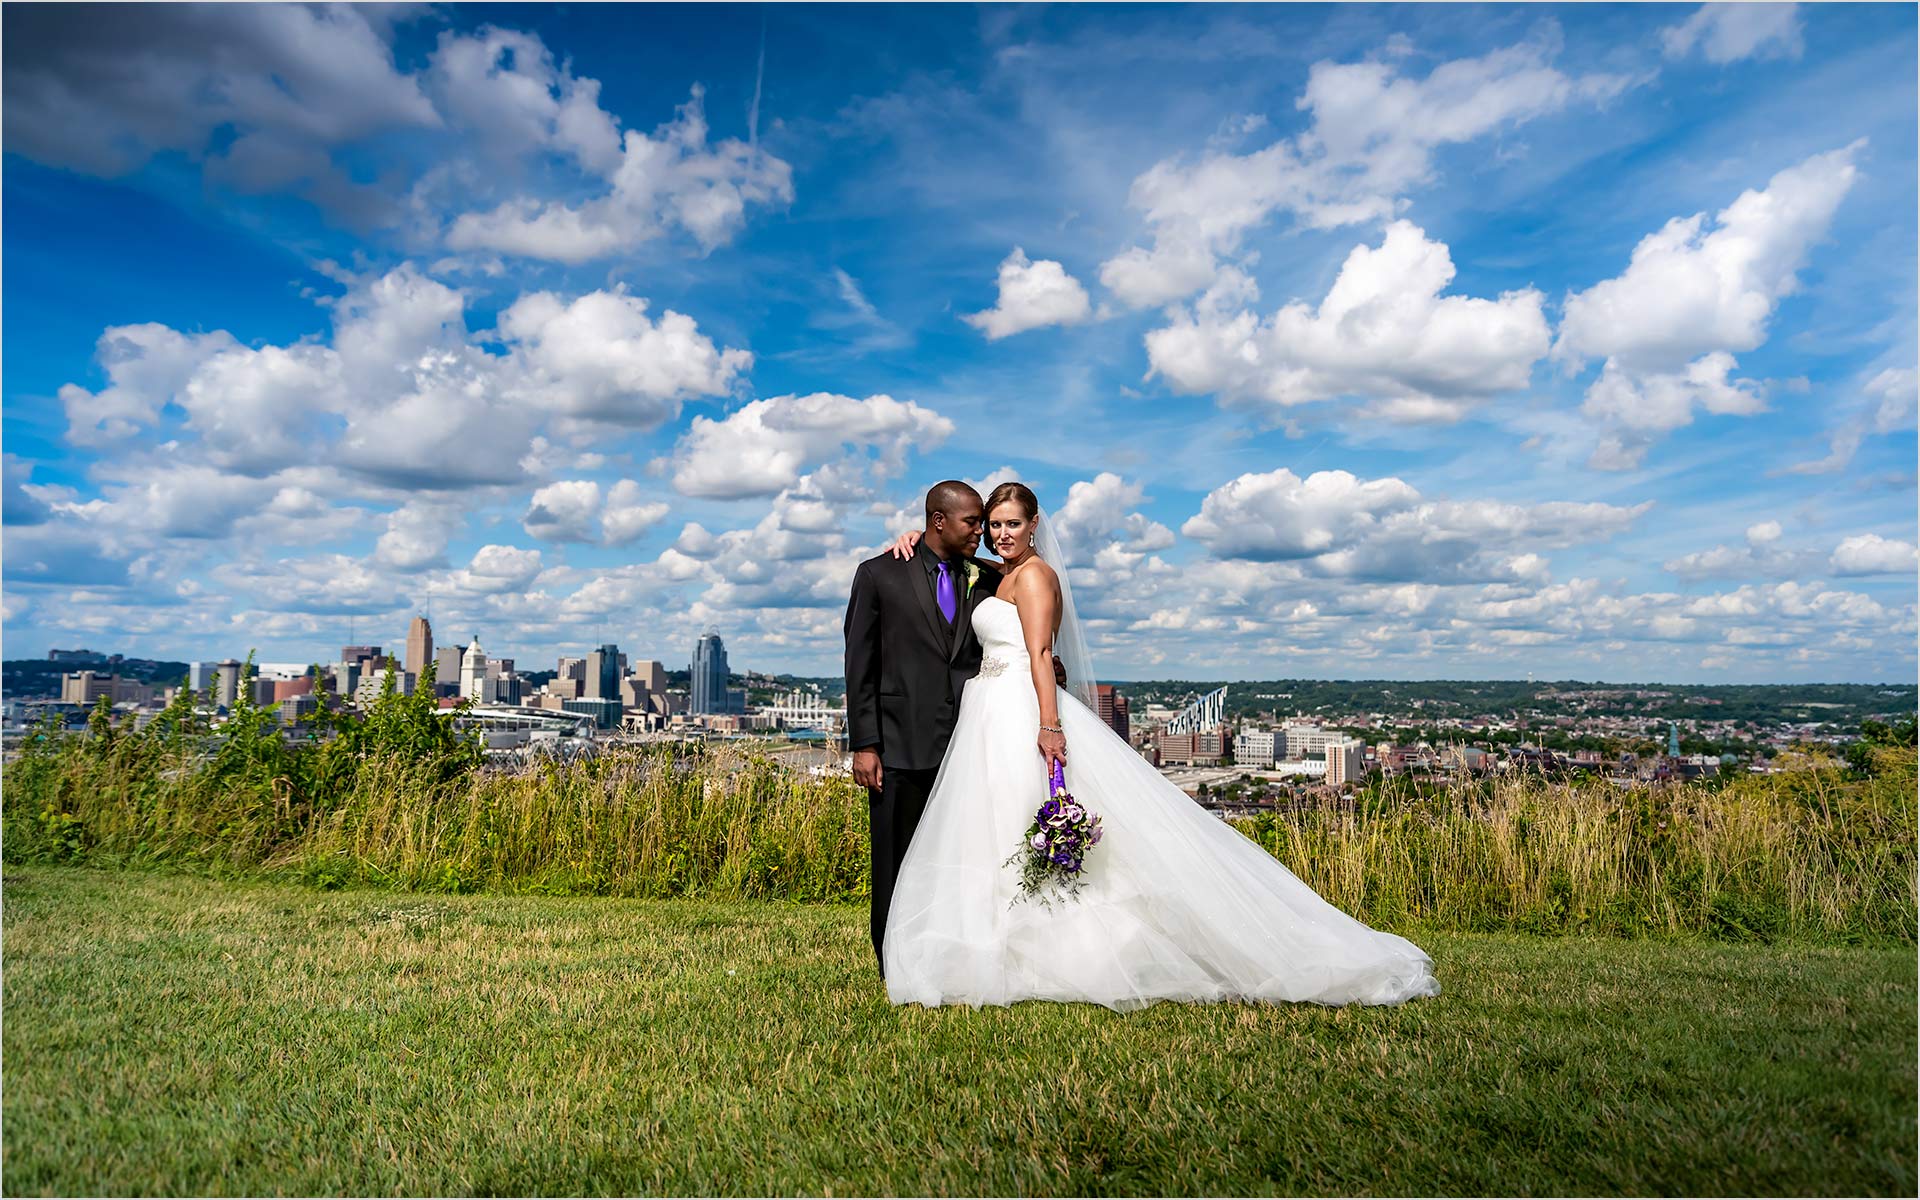 Cincinnati Skyline, Devou Park, The Center Cincinnati, Bride Groom